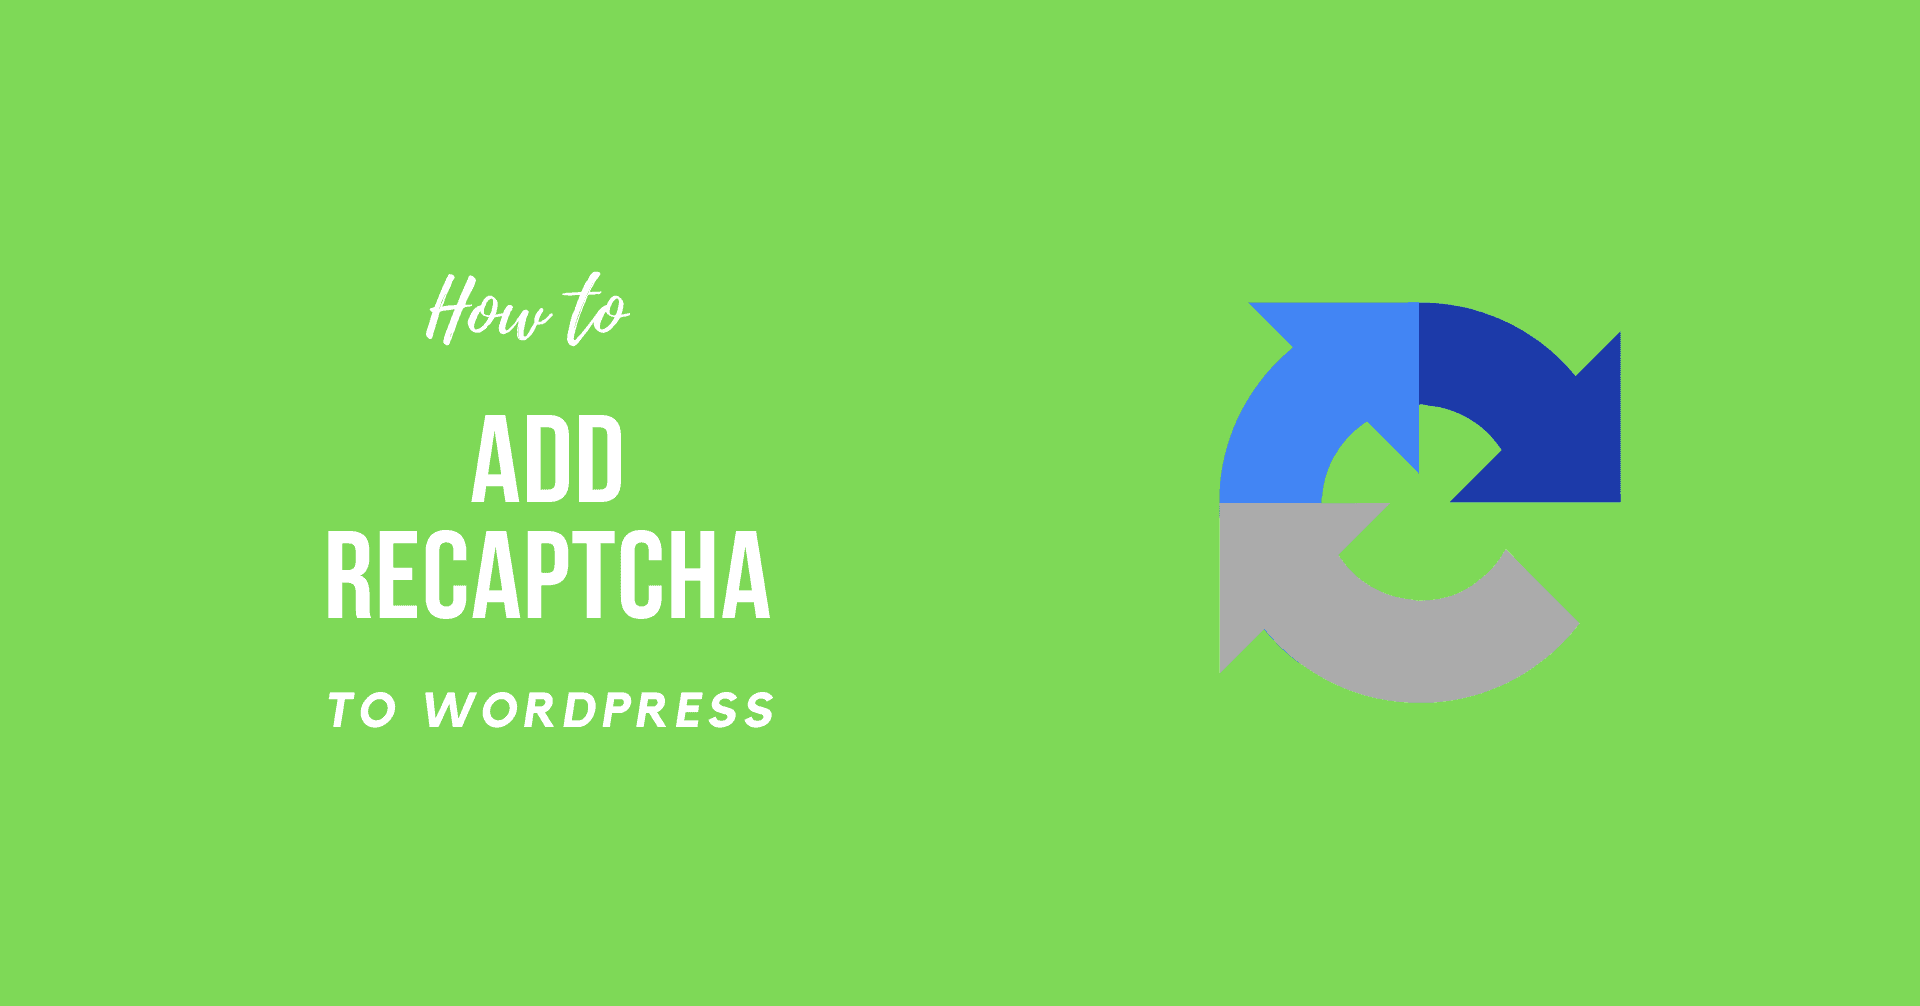 How to Add reCAPTCHA to WordPress